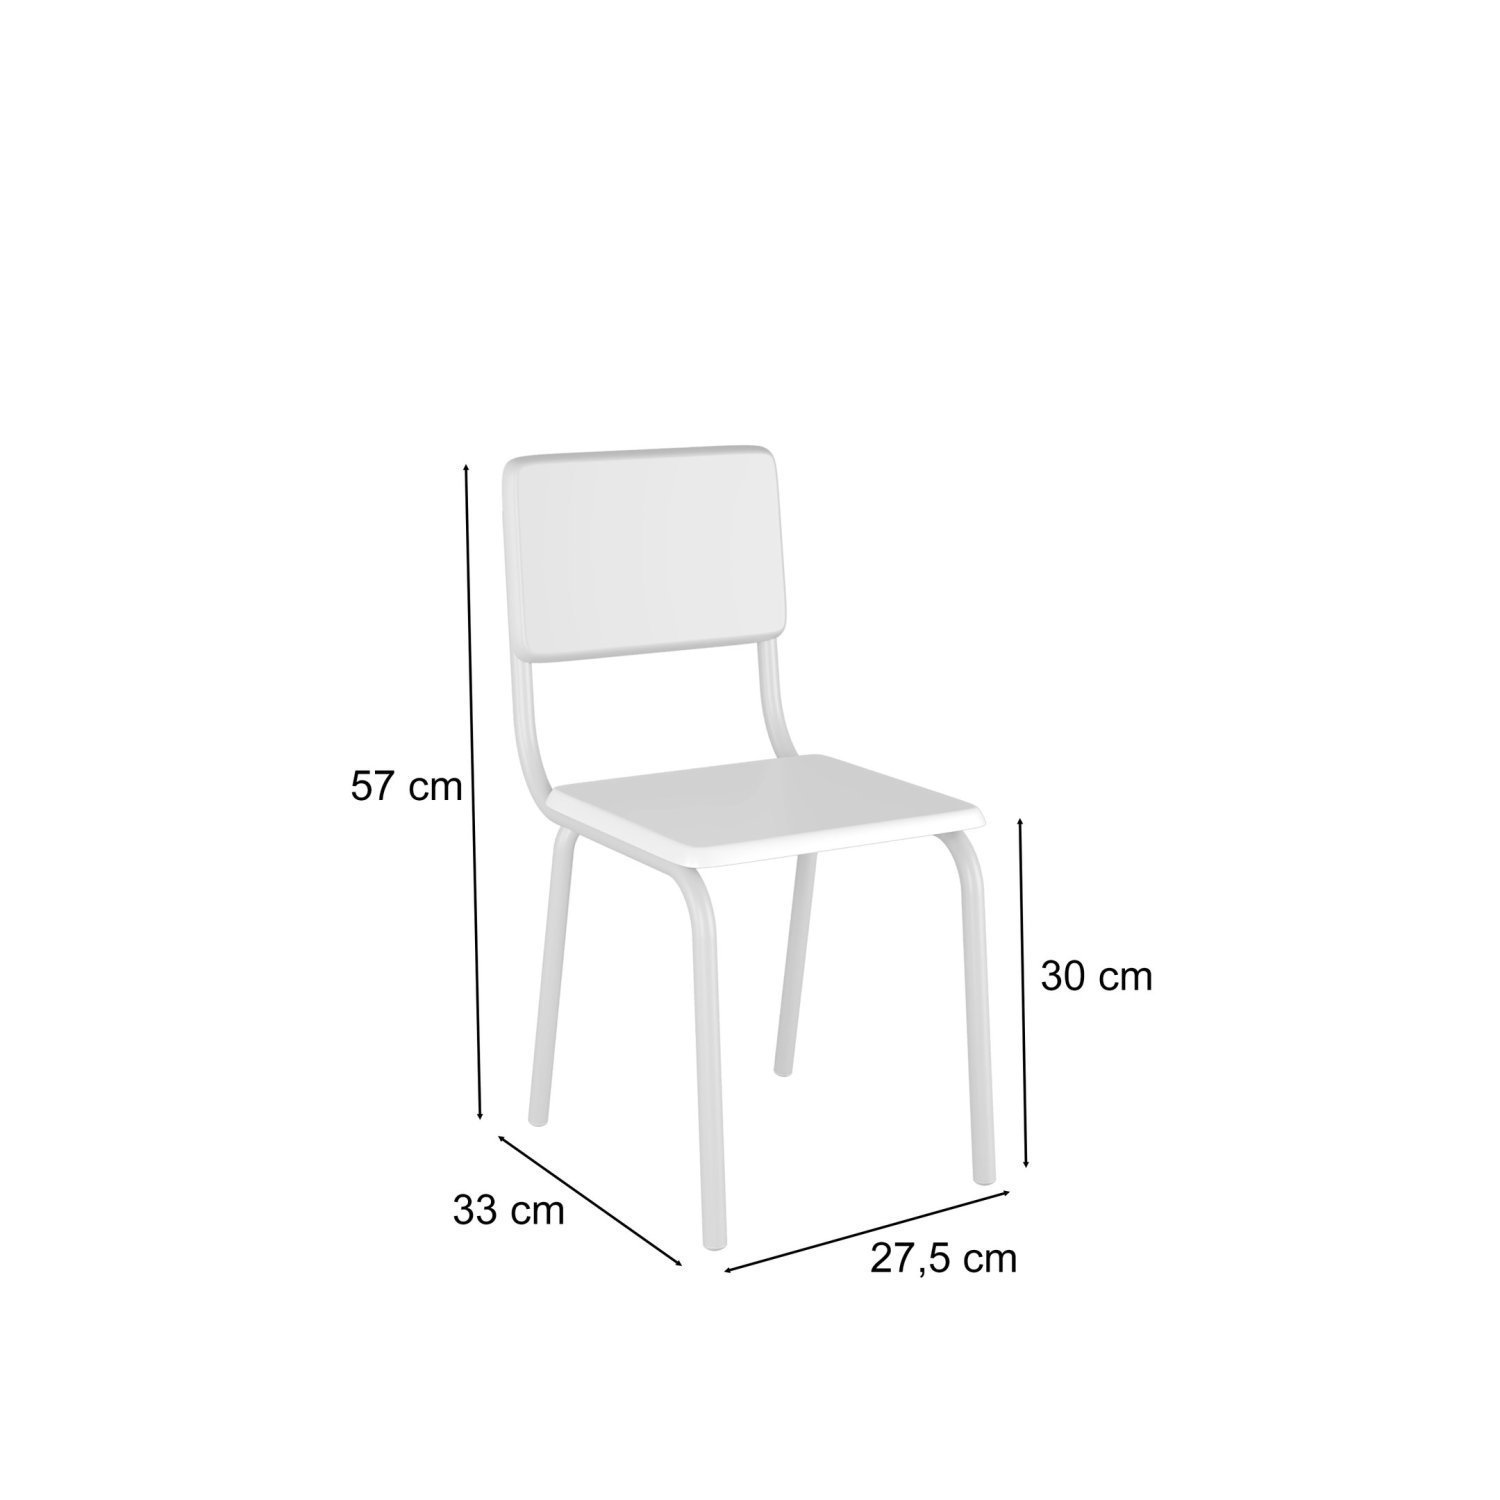 Conjunto Infantil com Mesa 75x50cm com 4 Cadeiras Laura - 4